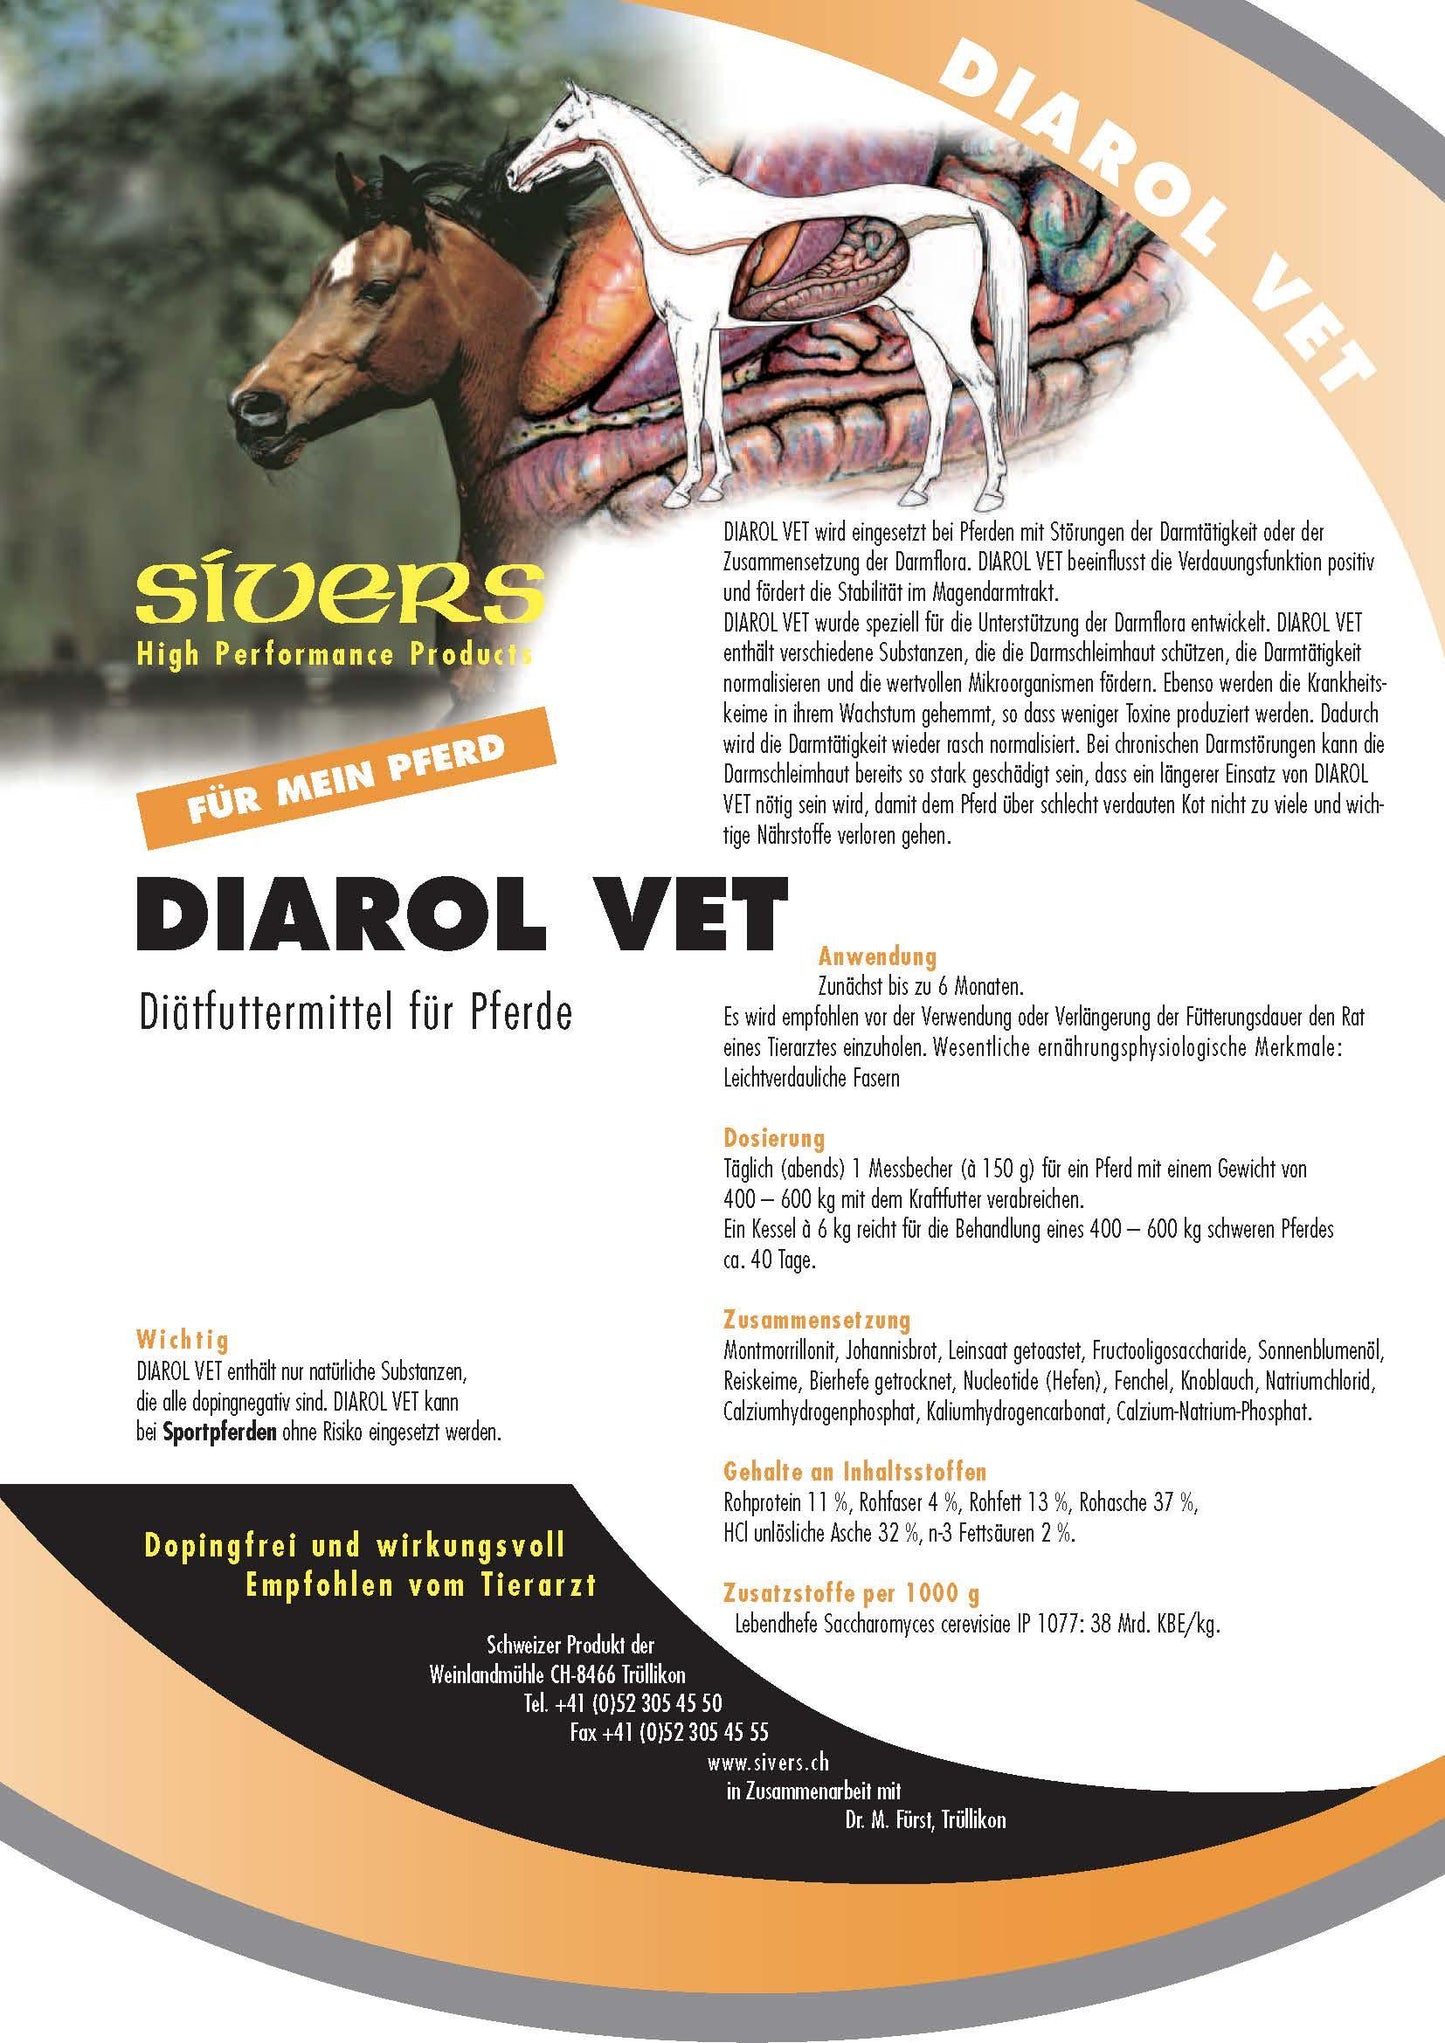 Diarol Vet - Sivers - Darreichungsform:Pulver, Ergänzungsfuttermittel:Verdauung, Tierart:Pferd - Marigin AG Onlineshop für Tierbedarf